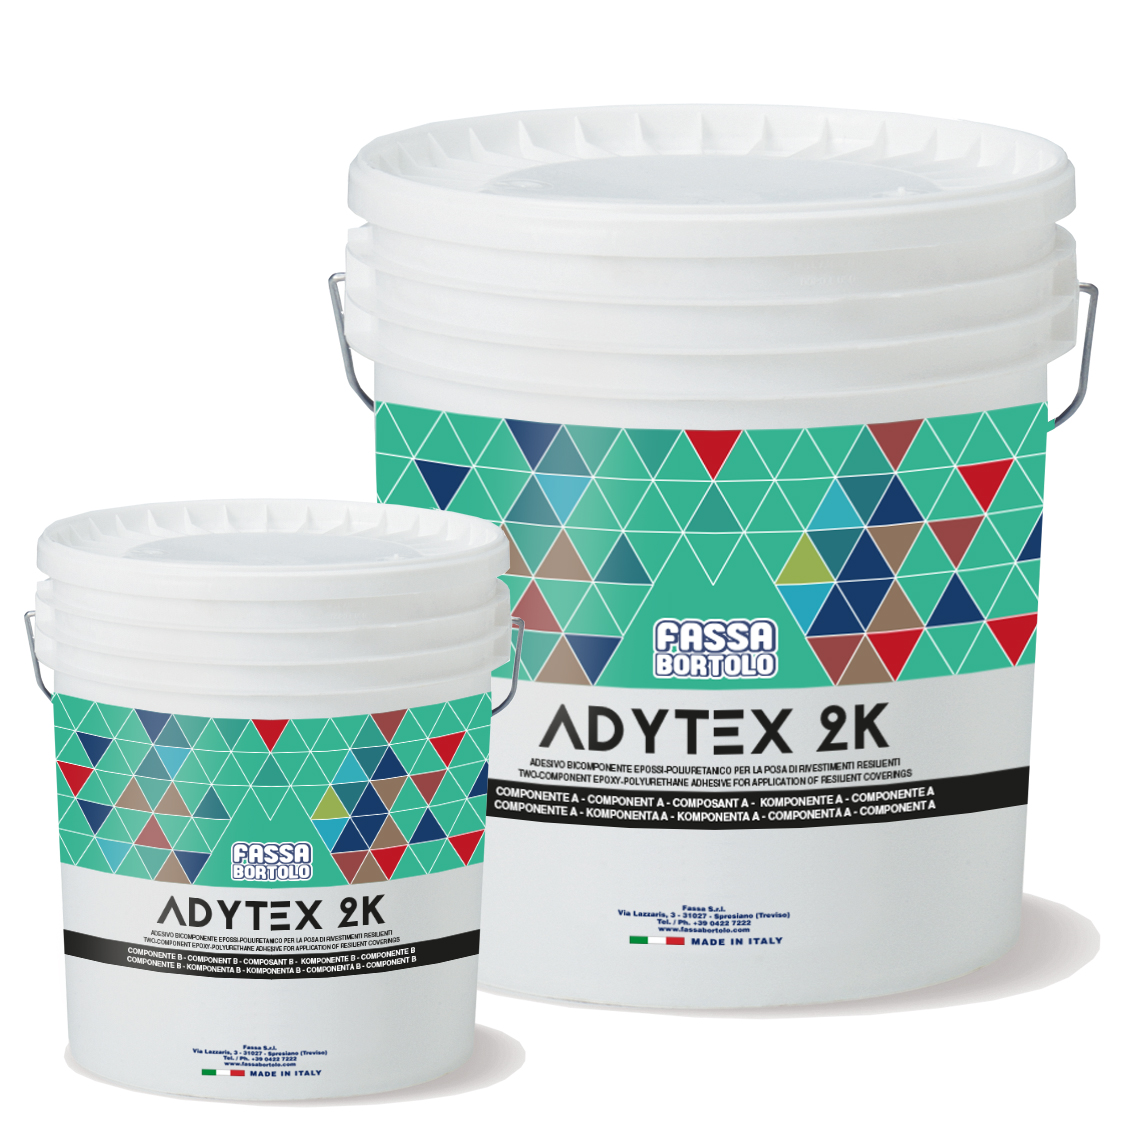 ADYTEX 2K: Adesivo epossi-poliuretanico bicomponente per rivestimenti resilienti